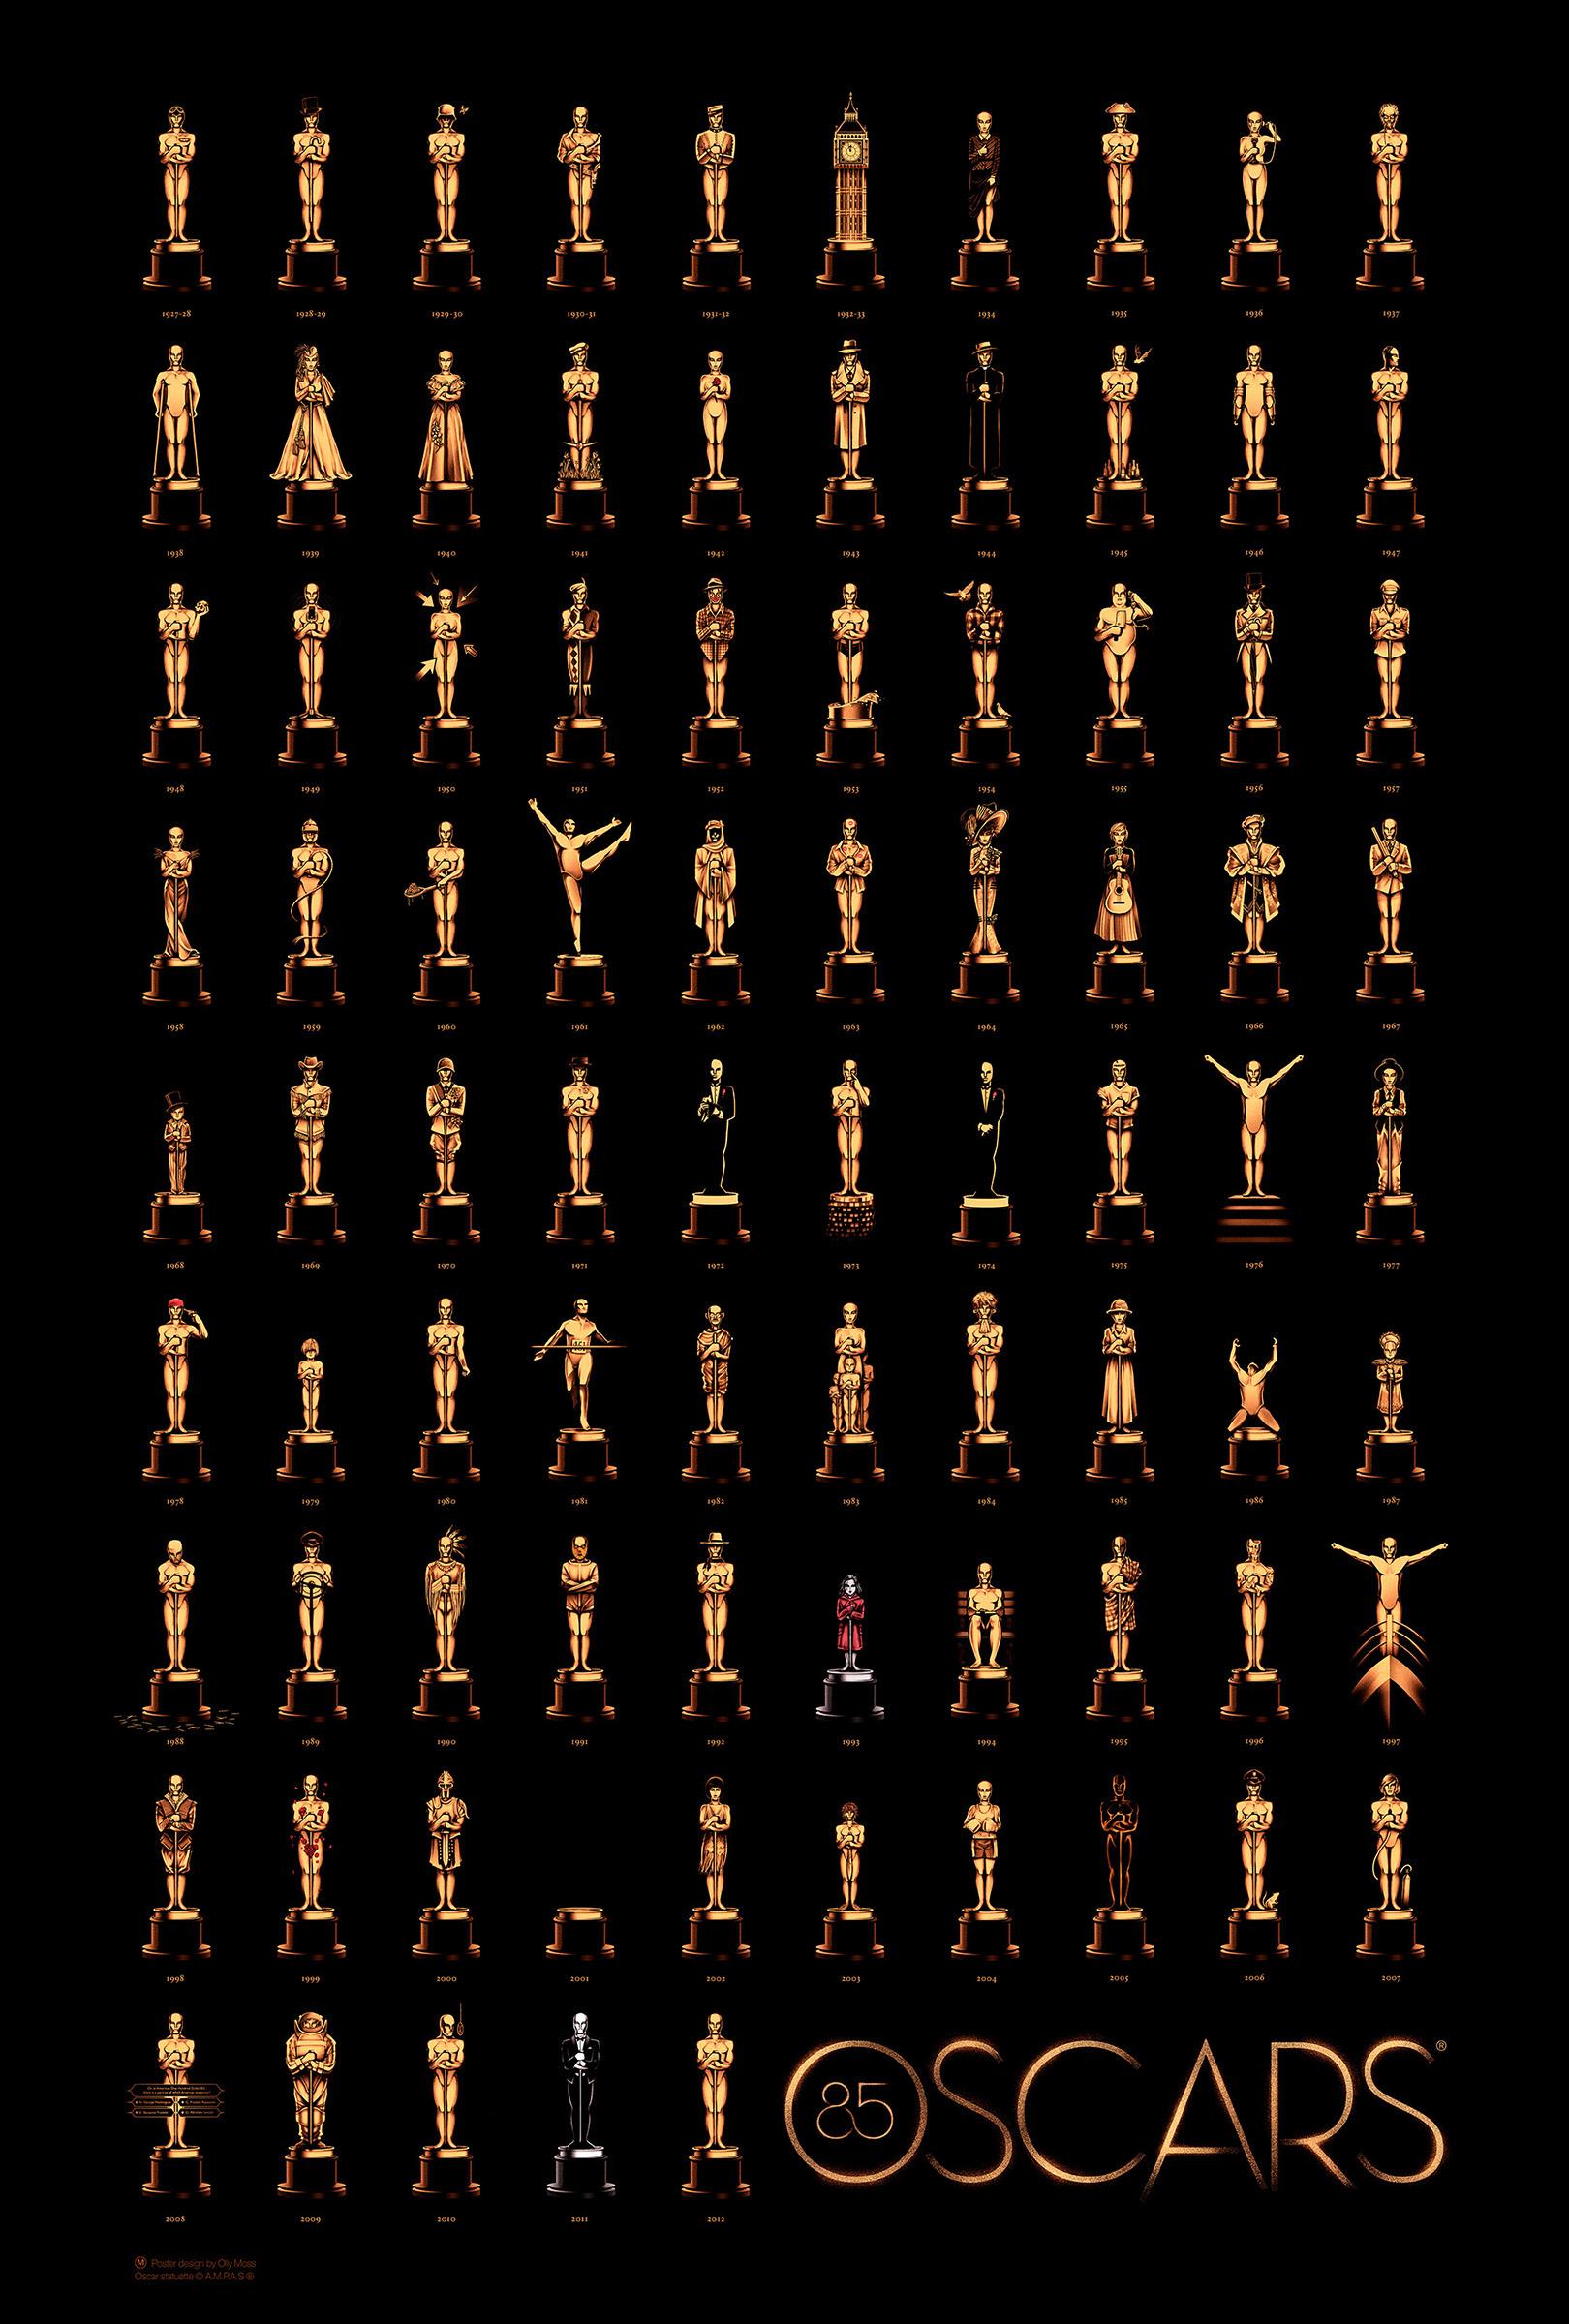 Oscars 2013 : une affiche déjà culte ! (poster)